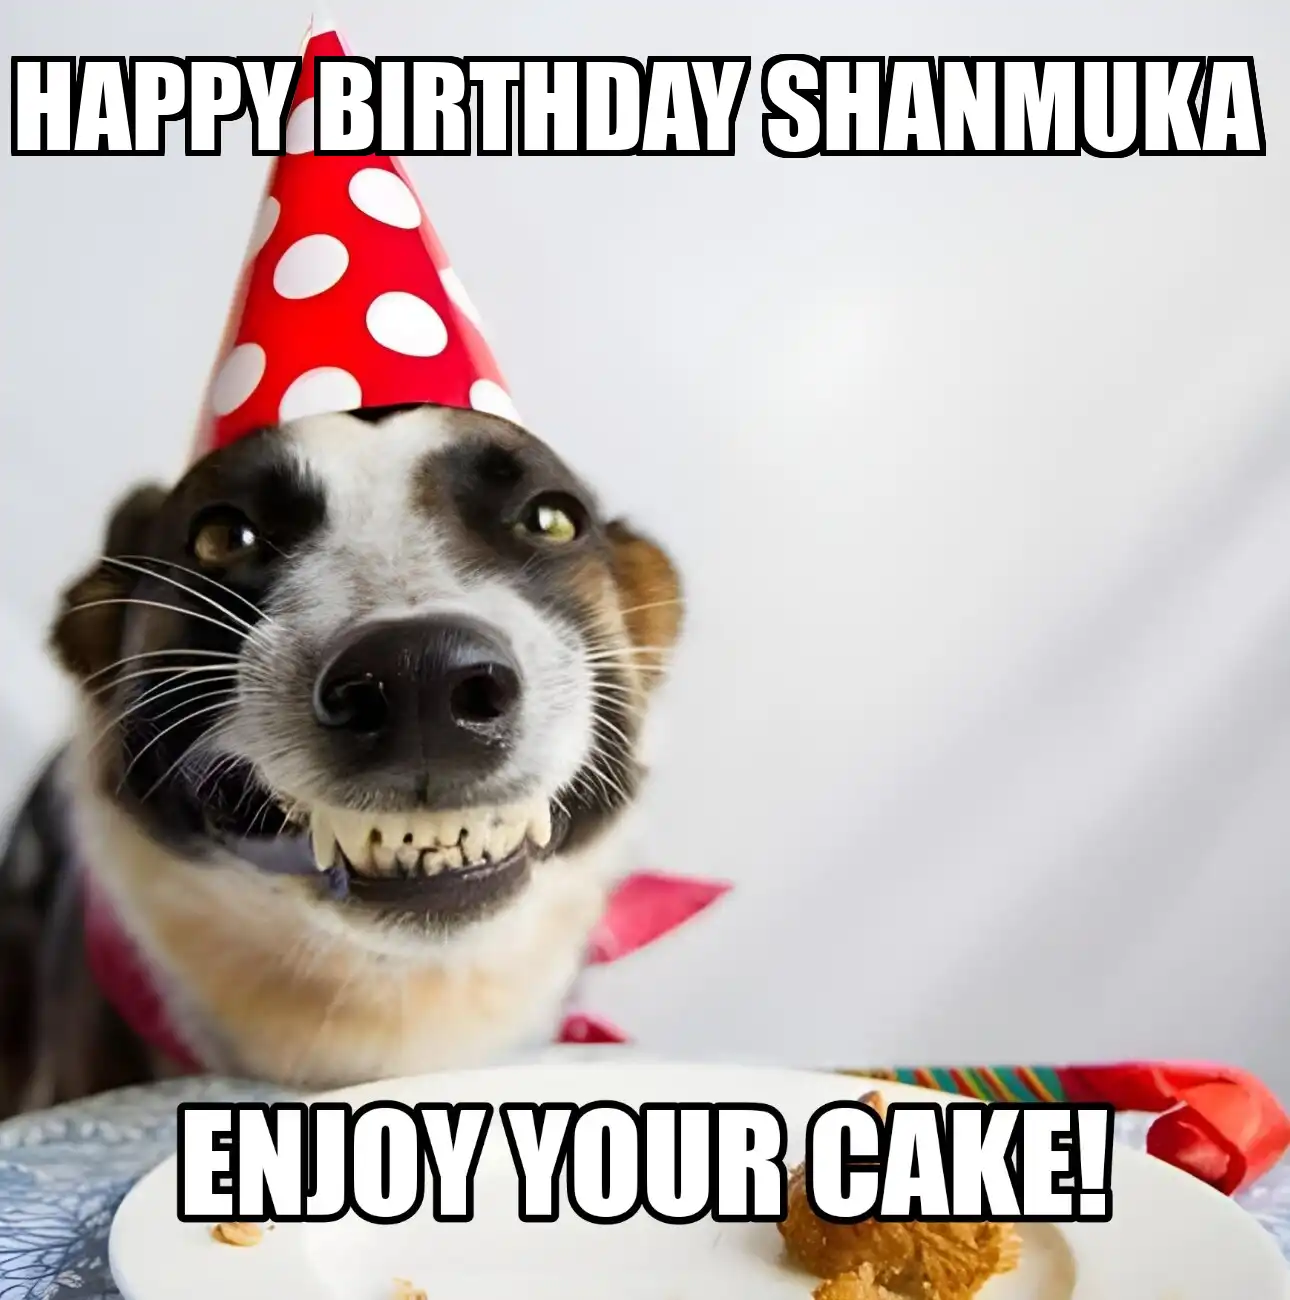 Happy Birthday Shanmuka Enjoy Your Cake Dog Meme